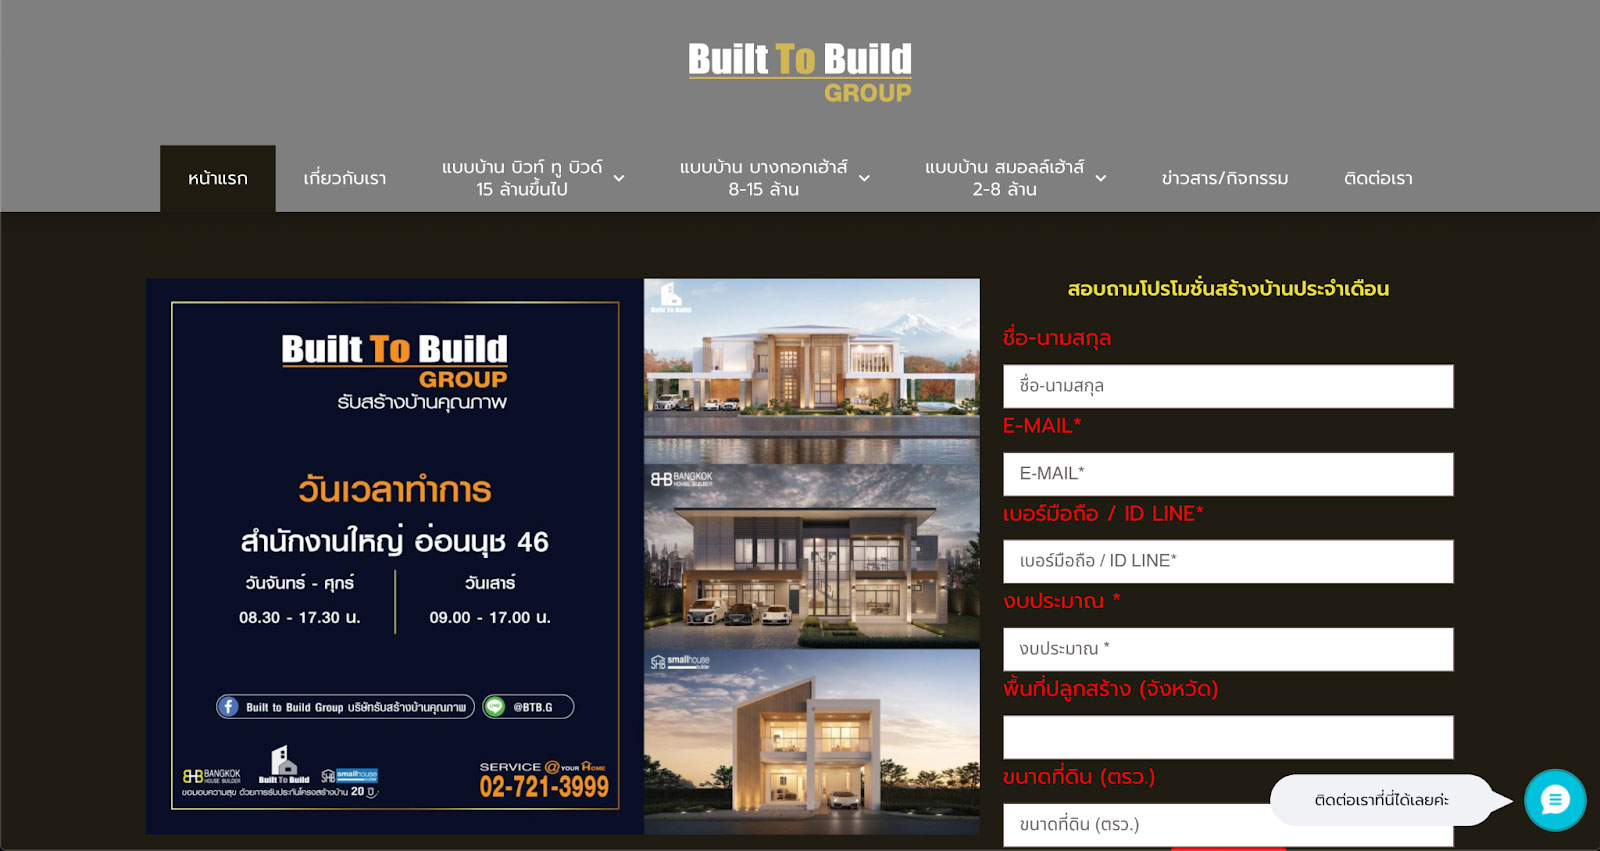 บิวท์ ทู บิวด์ (Built To Build) บริษัทสร้างบ้านหรู